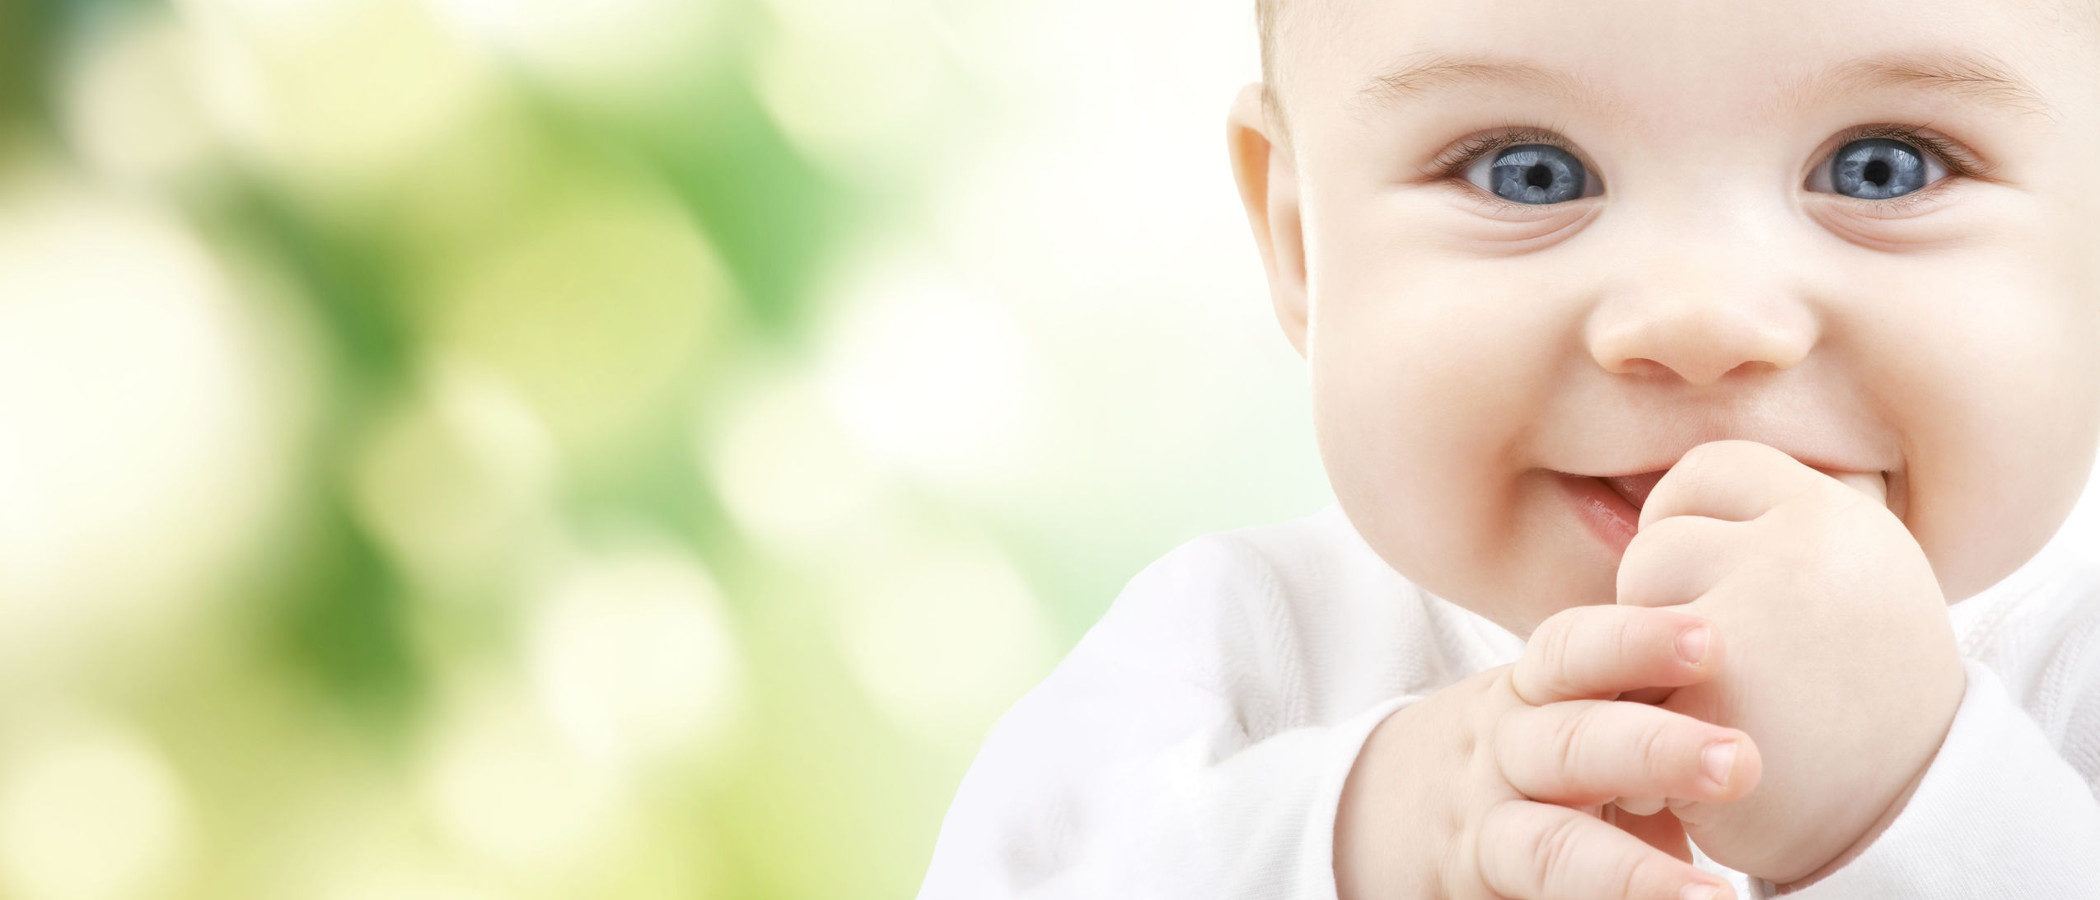 ¿Tendrá siempre el bebé los ojos claros?